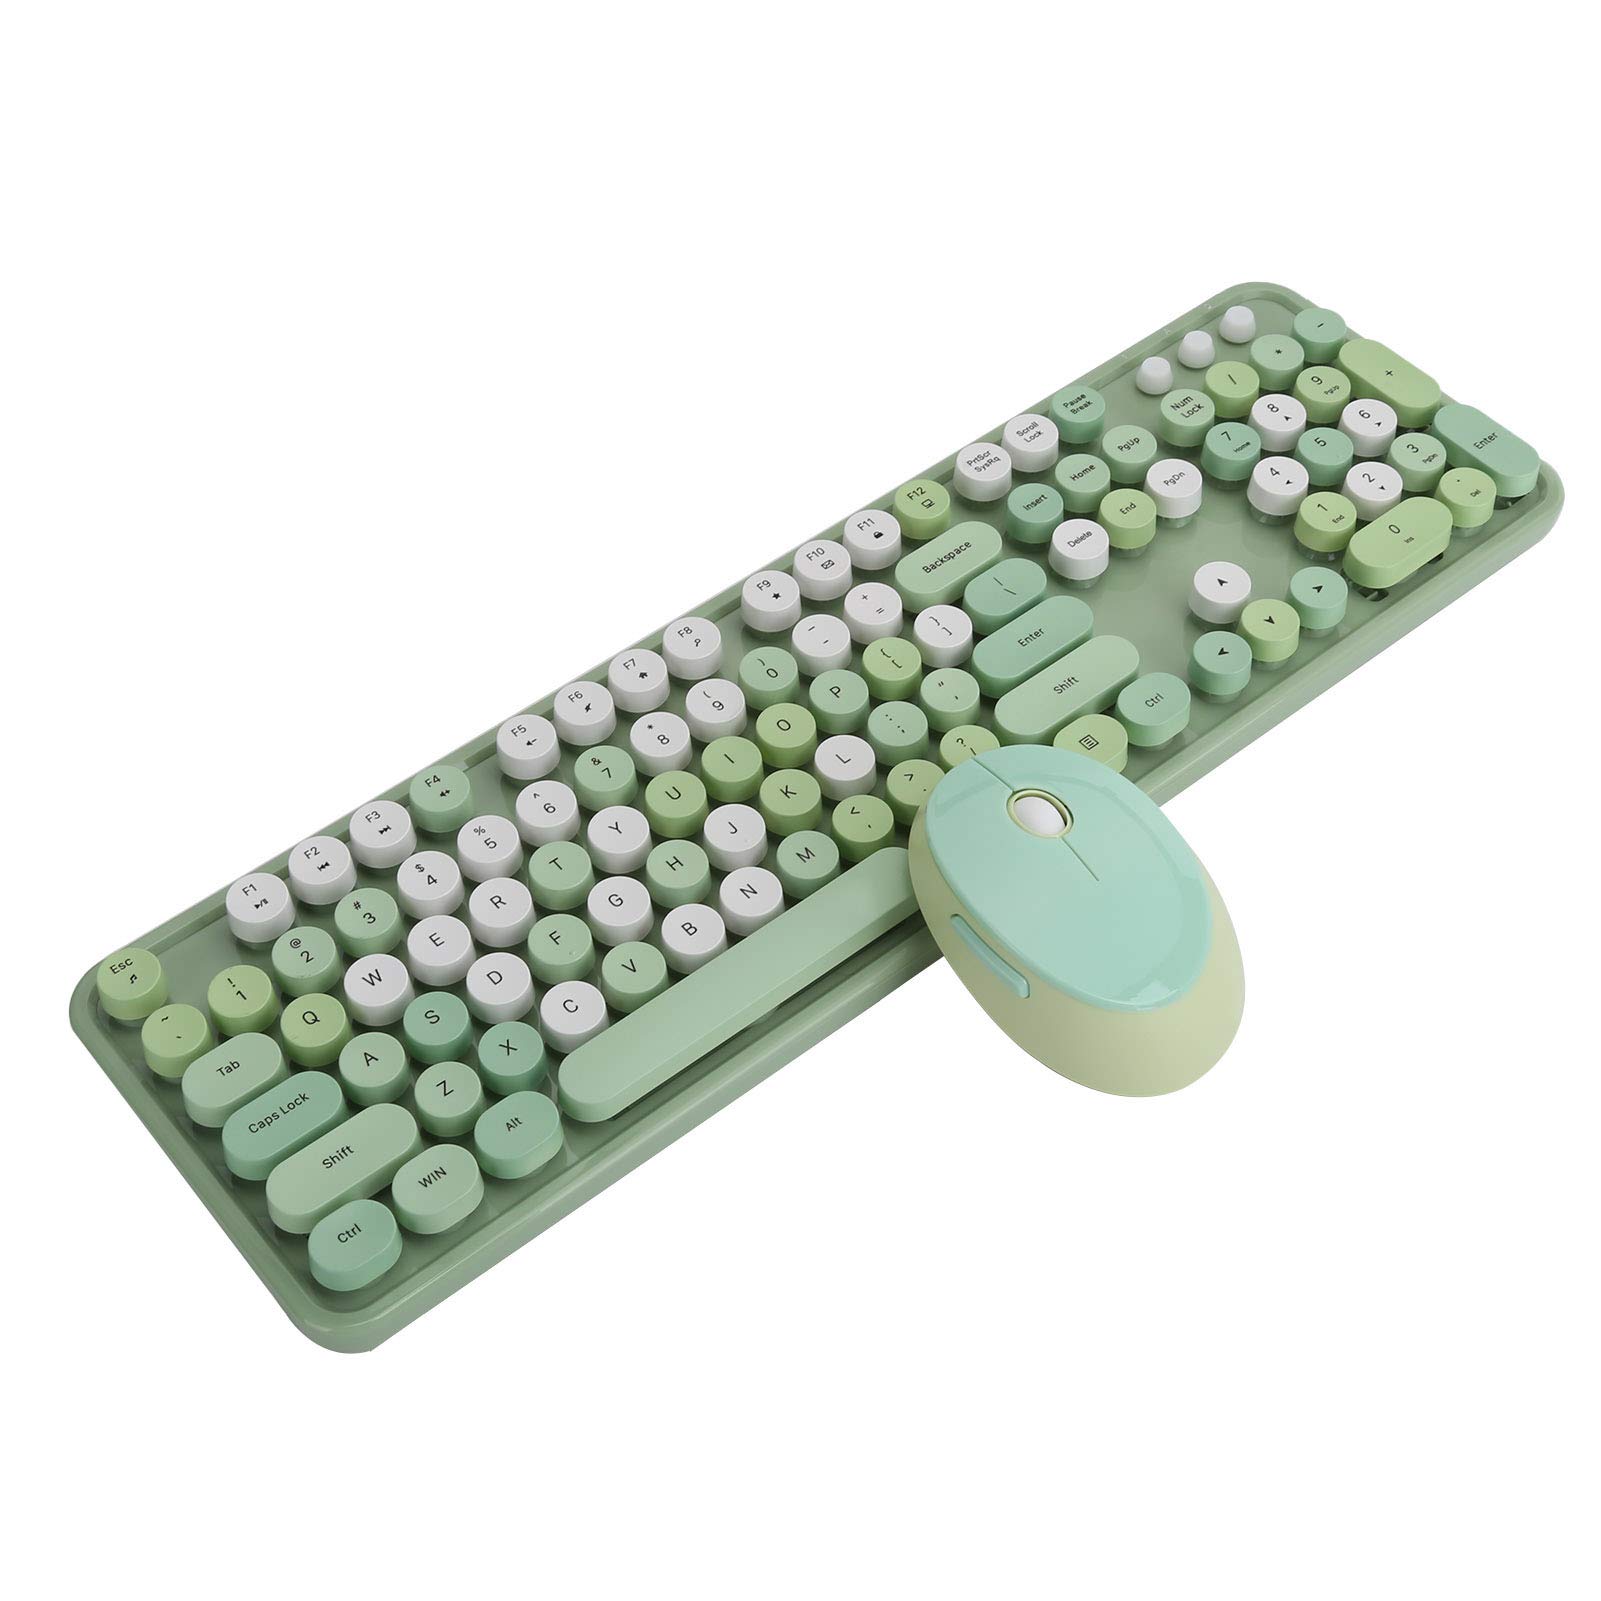 Annadue 2.4G Wireless Keyboard Mouse Set, Bunte Mischfarben-Tastatur Mauskombinationen, mit 104 Tasten, FN + Multimedia Taste, Retro Schreibmaschinenstil(Grün)